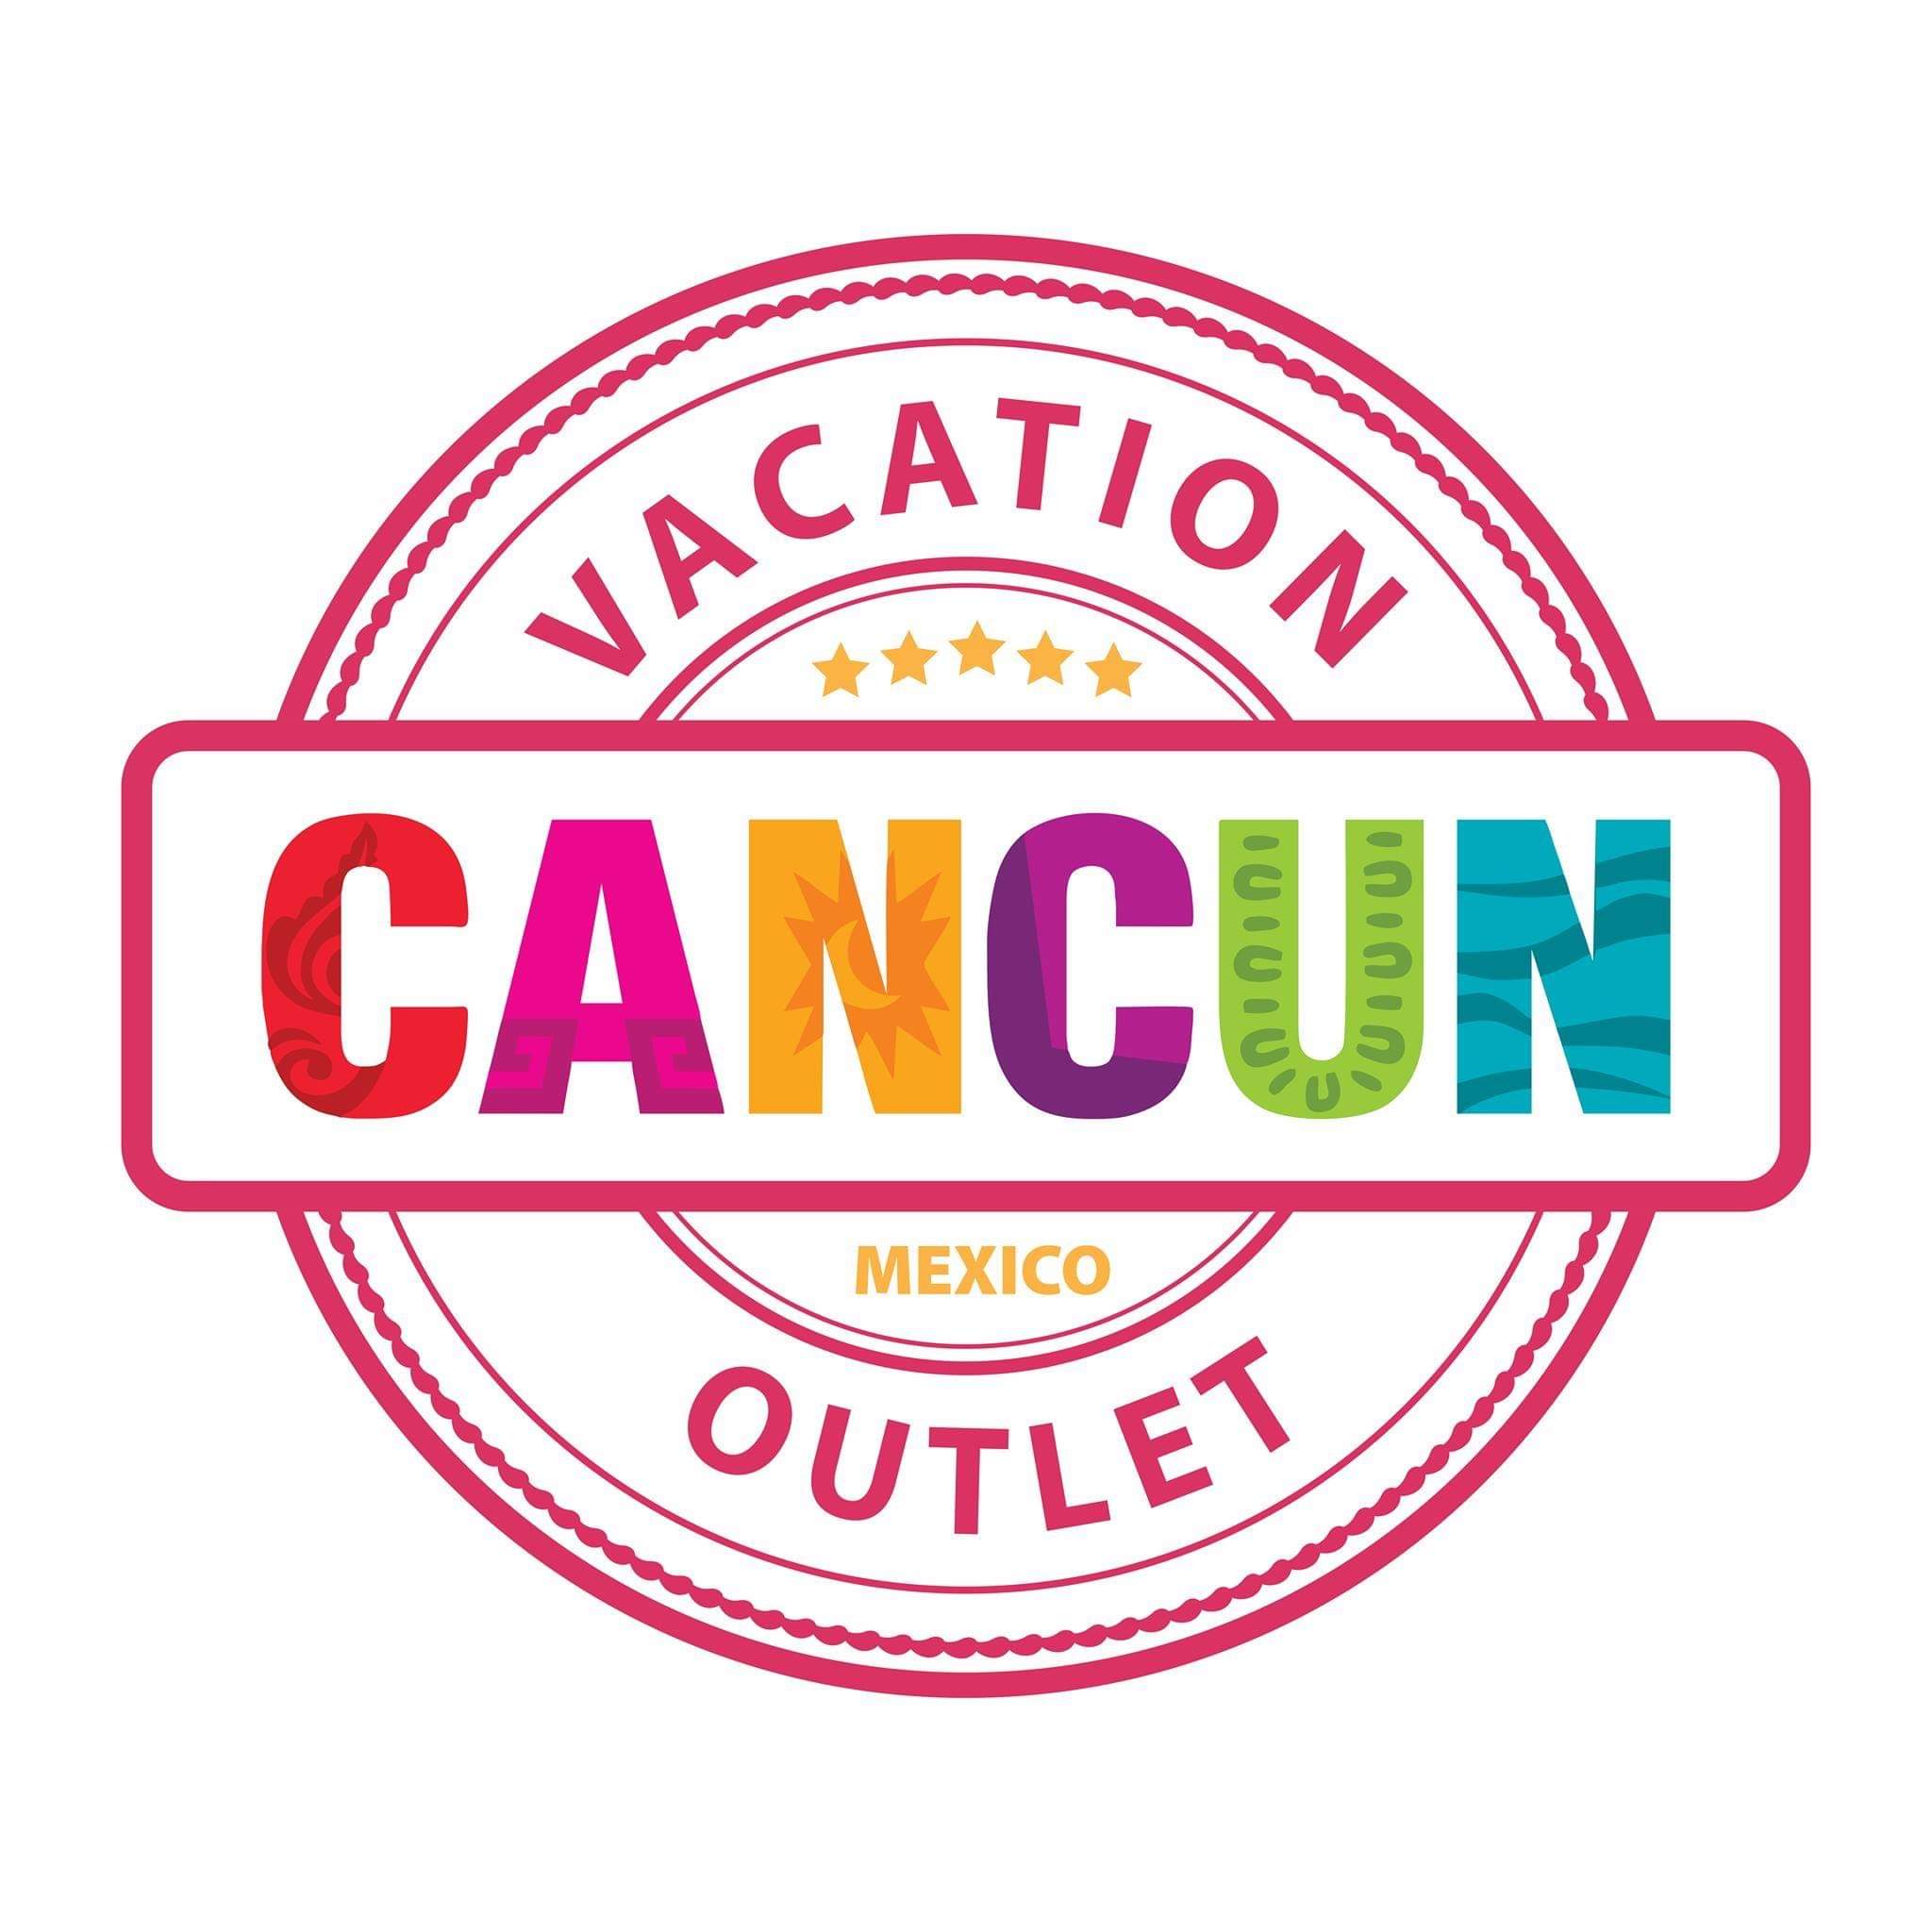 Agencia de viajes Cancun Vacation Outlet